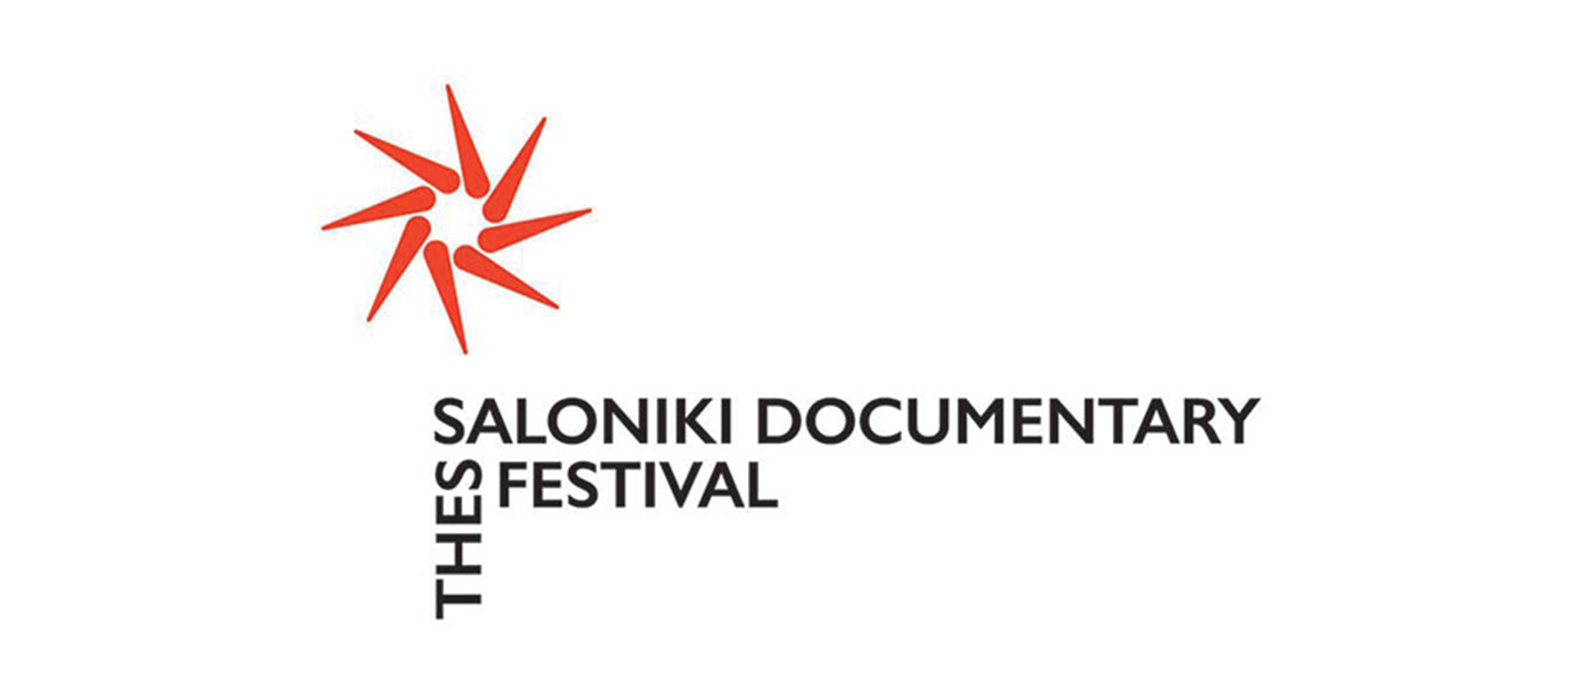 جشنواره مستند تسالونیکی (TDF)